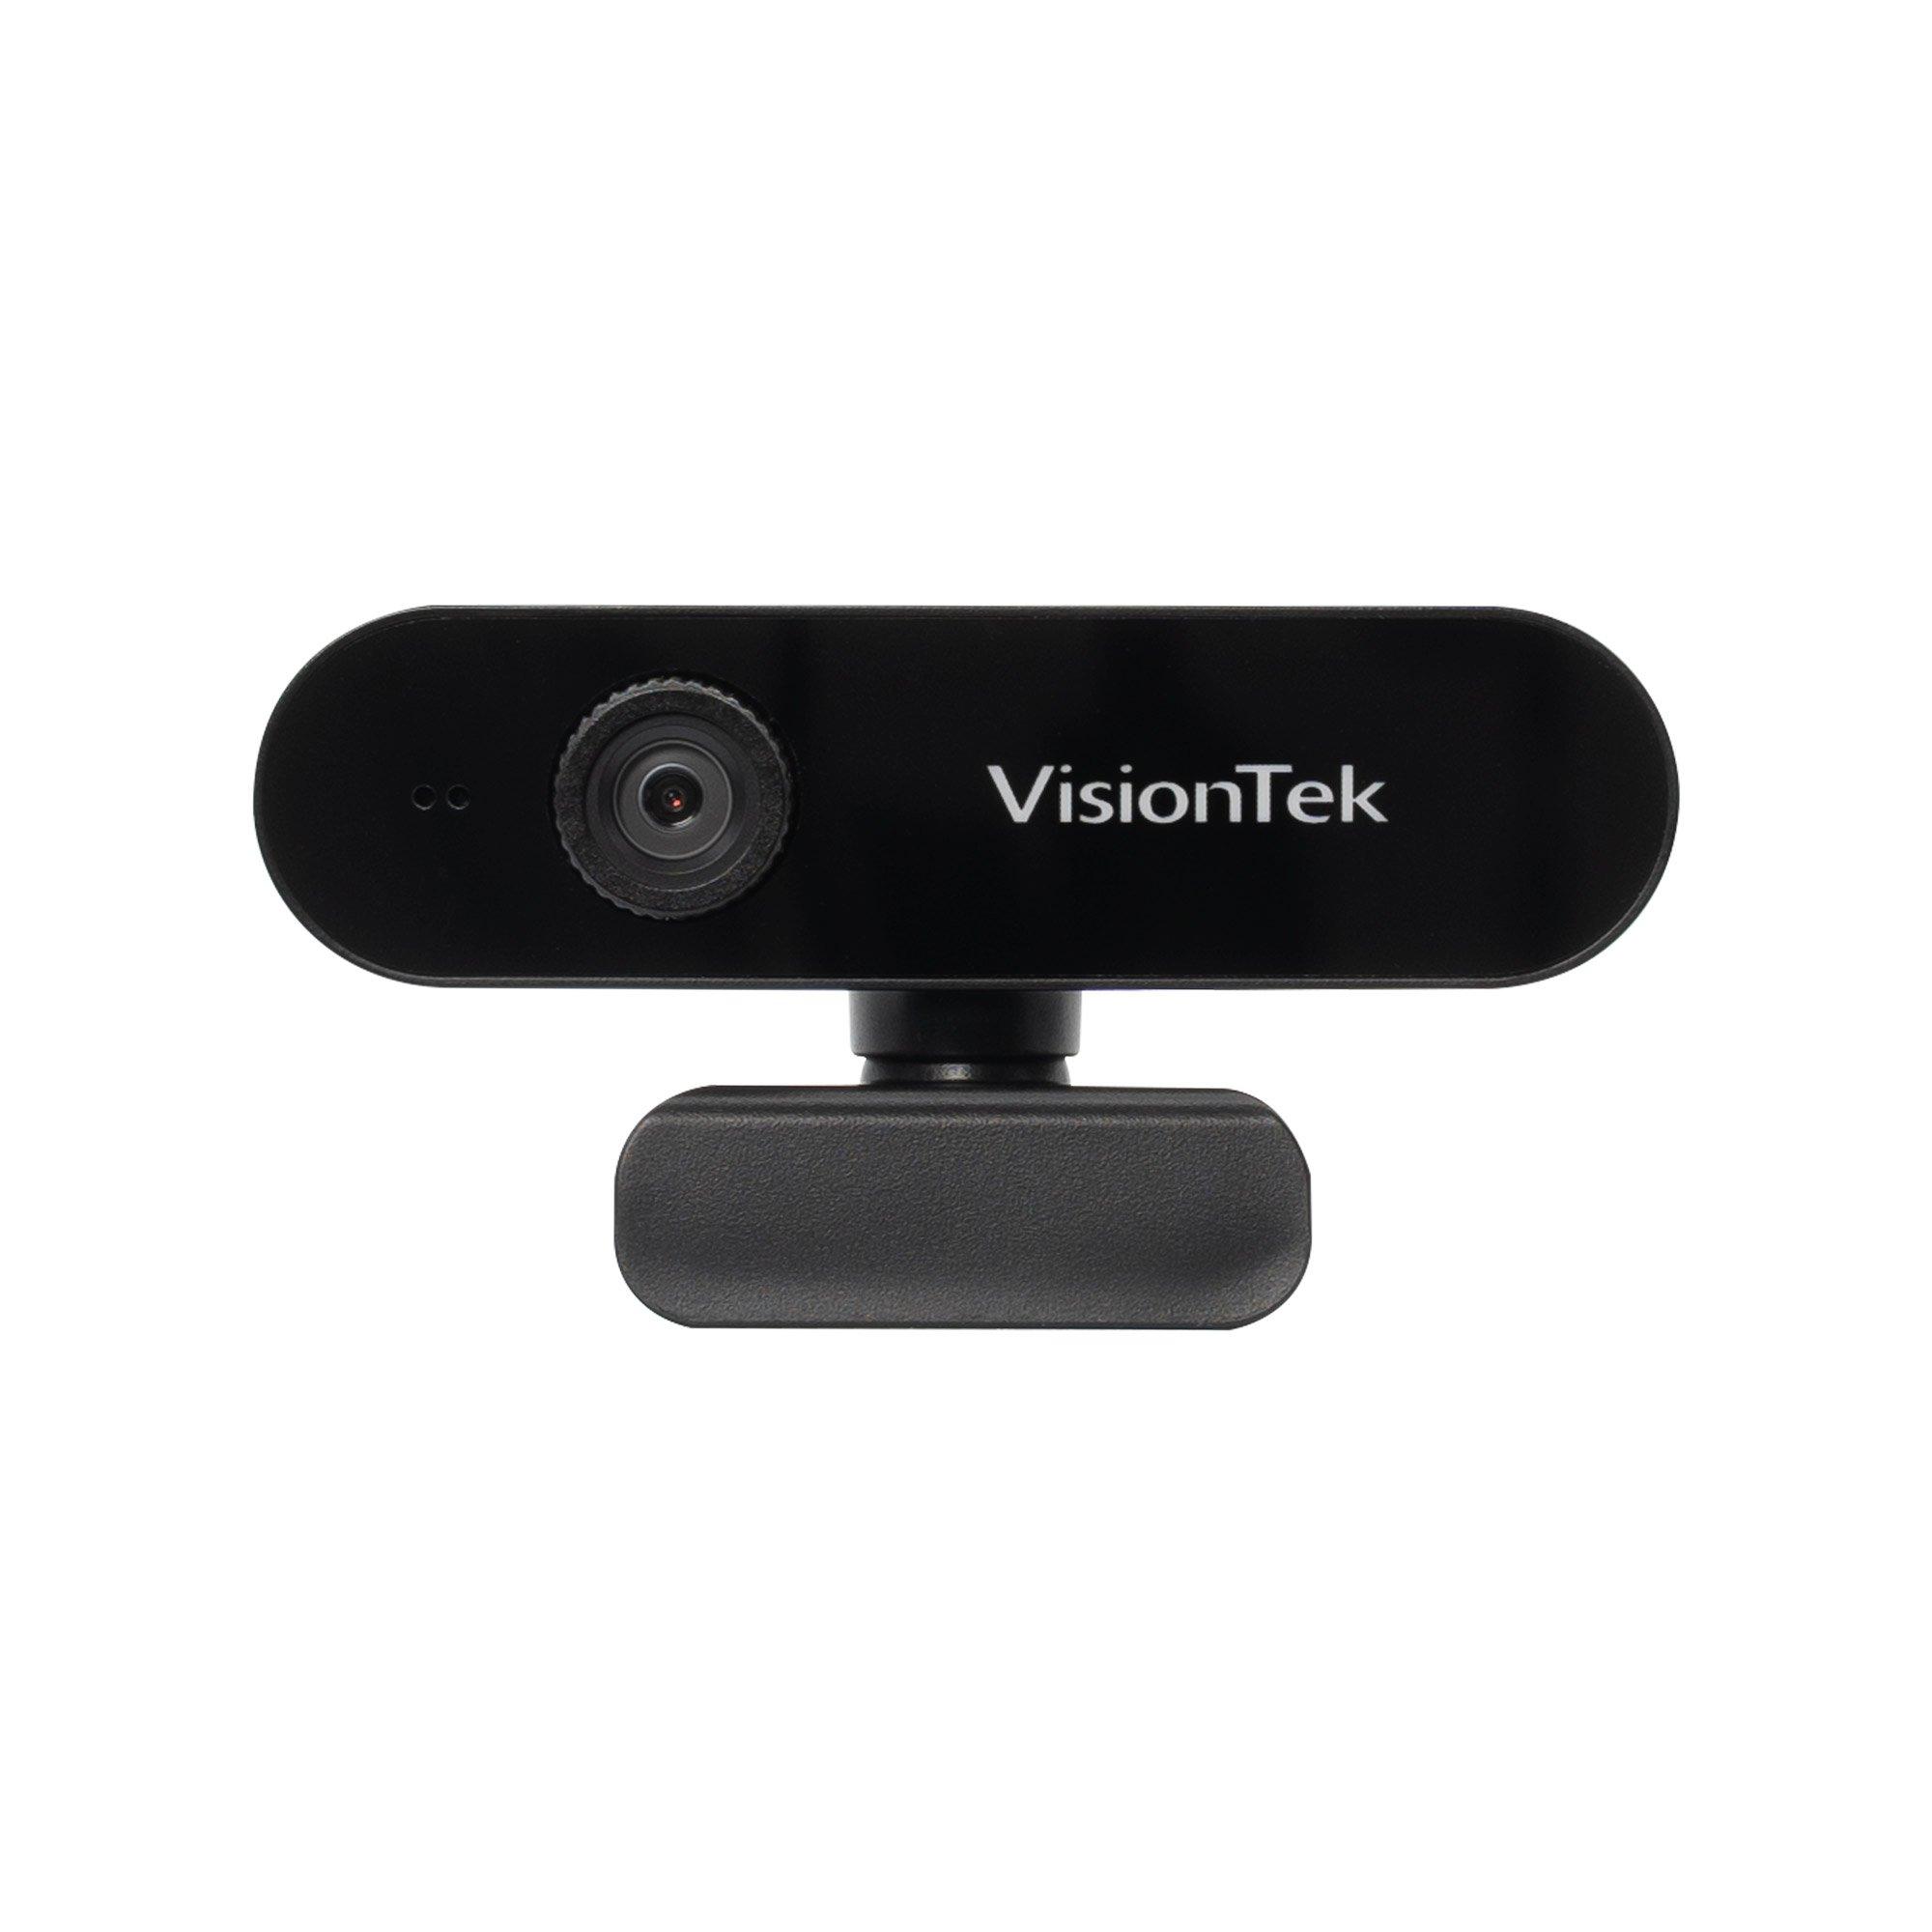 VisionTek VTWC30 Premium Full HD 1080p Manual Focus Webcam